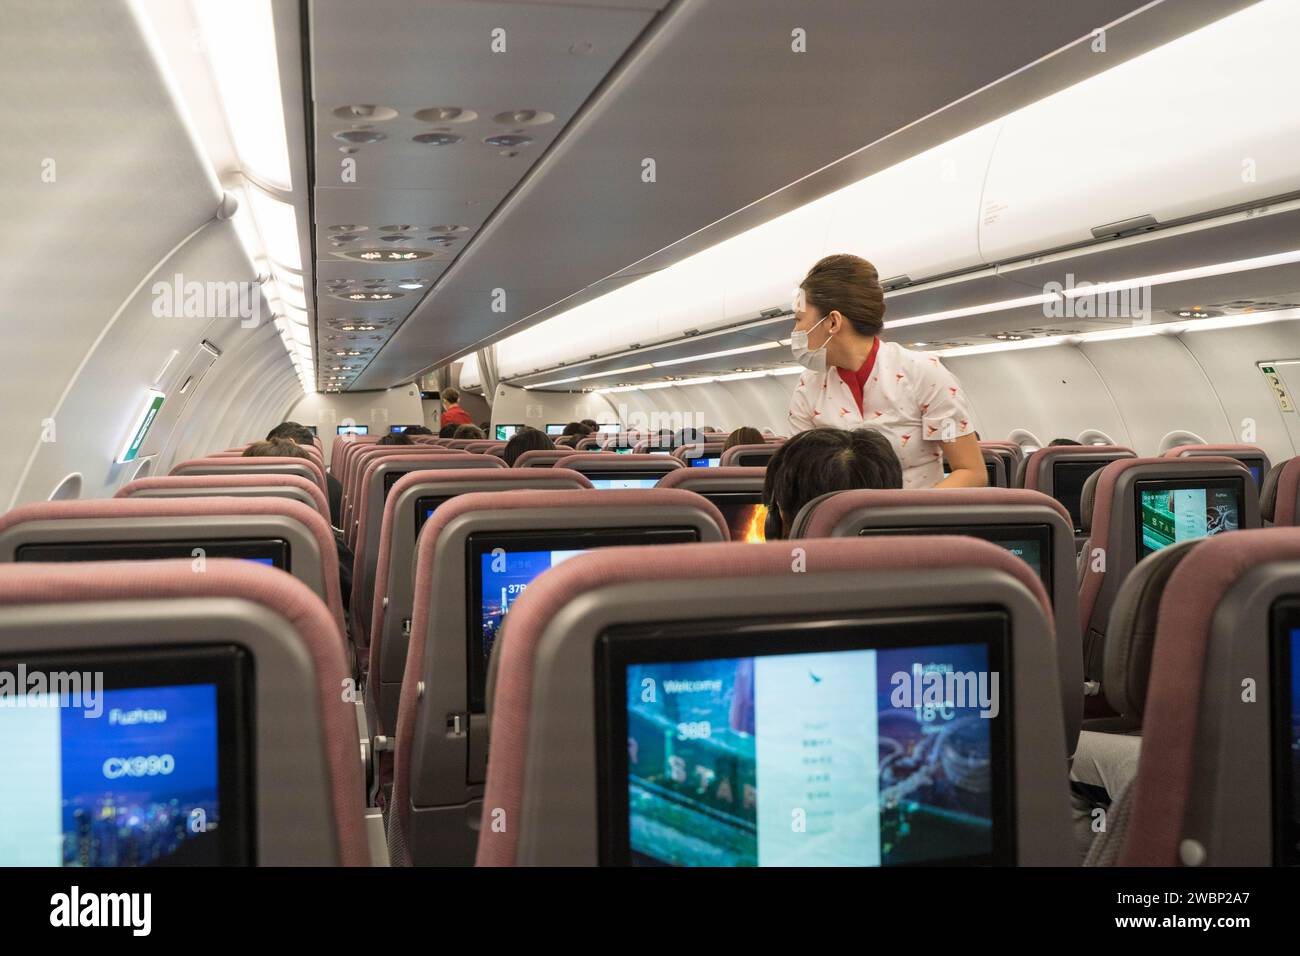 Vista dell'interno di un aereo dove una hostess si trovava nella corsia rispondendo a una richiesta di un passeggero, Hong Kong Cina. Foto Stock